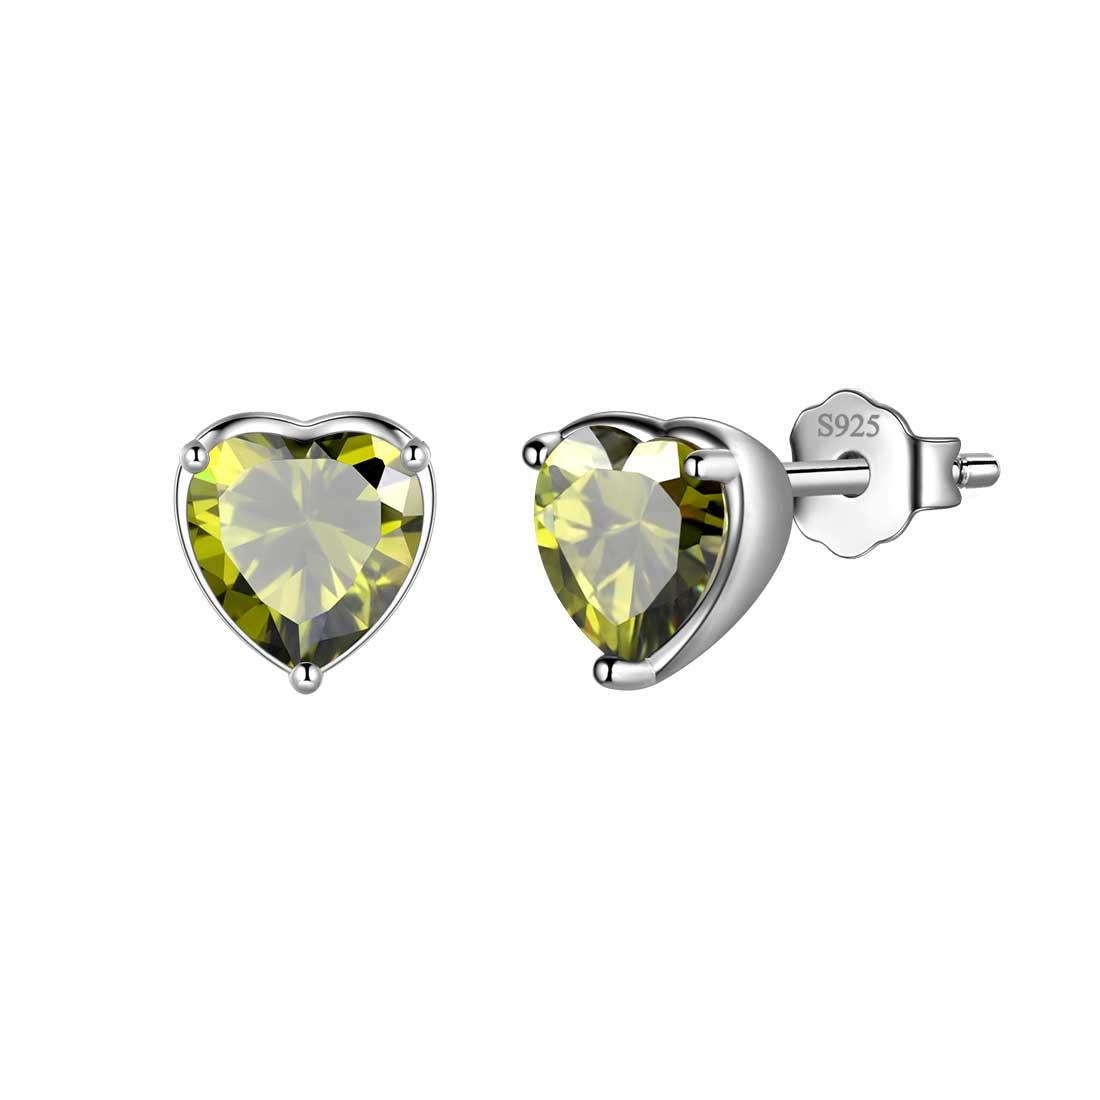 Women Hearts Studs Earring 925 Sterling Silver - Earrings - Aurora Tears Jewelry